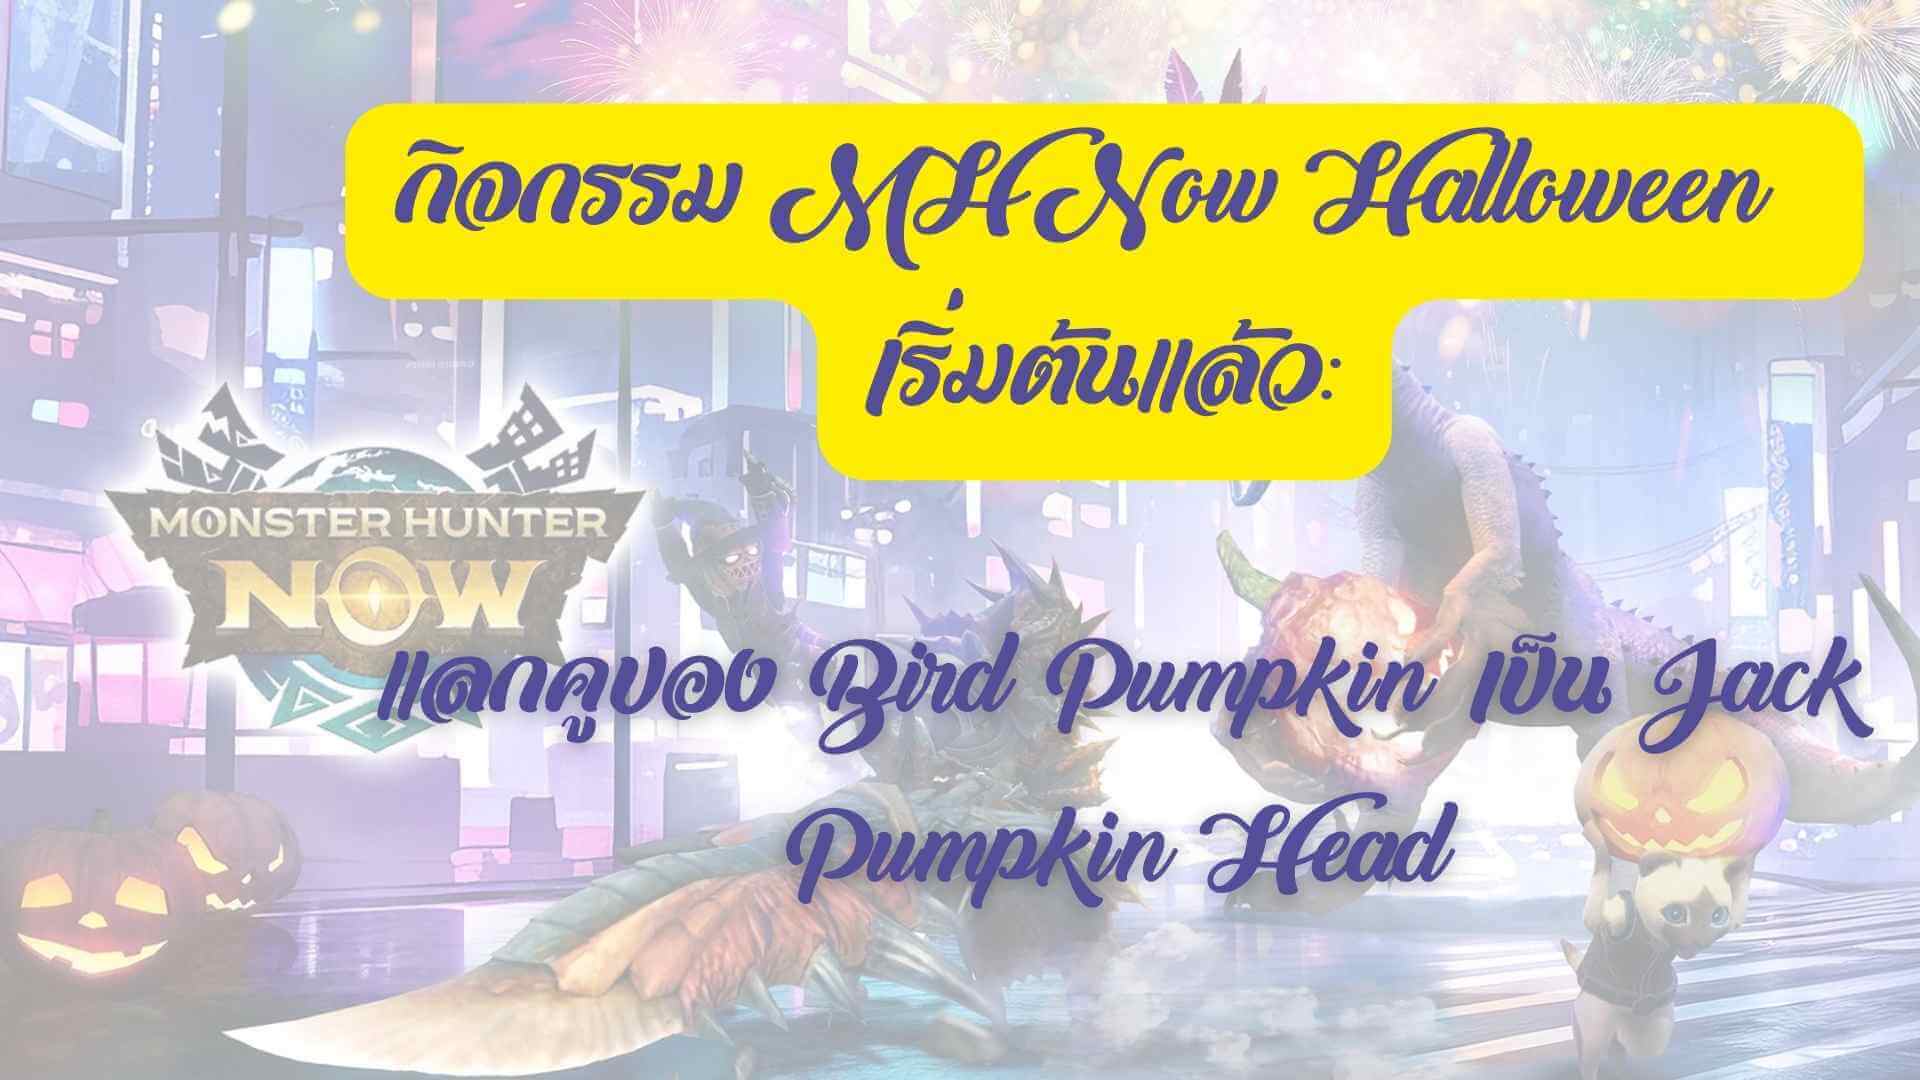 กิจกรรม MH Now Halloween เริ่มต้นแล้ว: แลกคูปอง Bird Pumpkin เป็น Jack Pumpkin Head